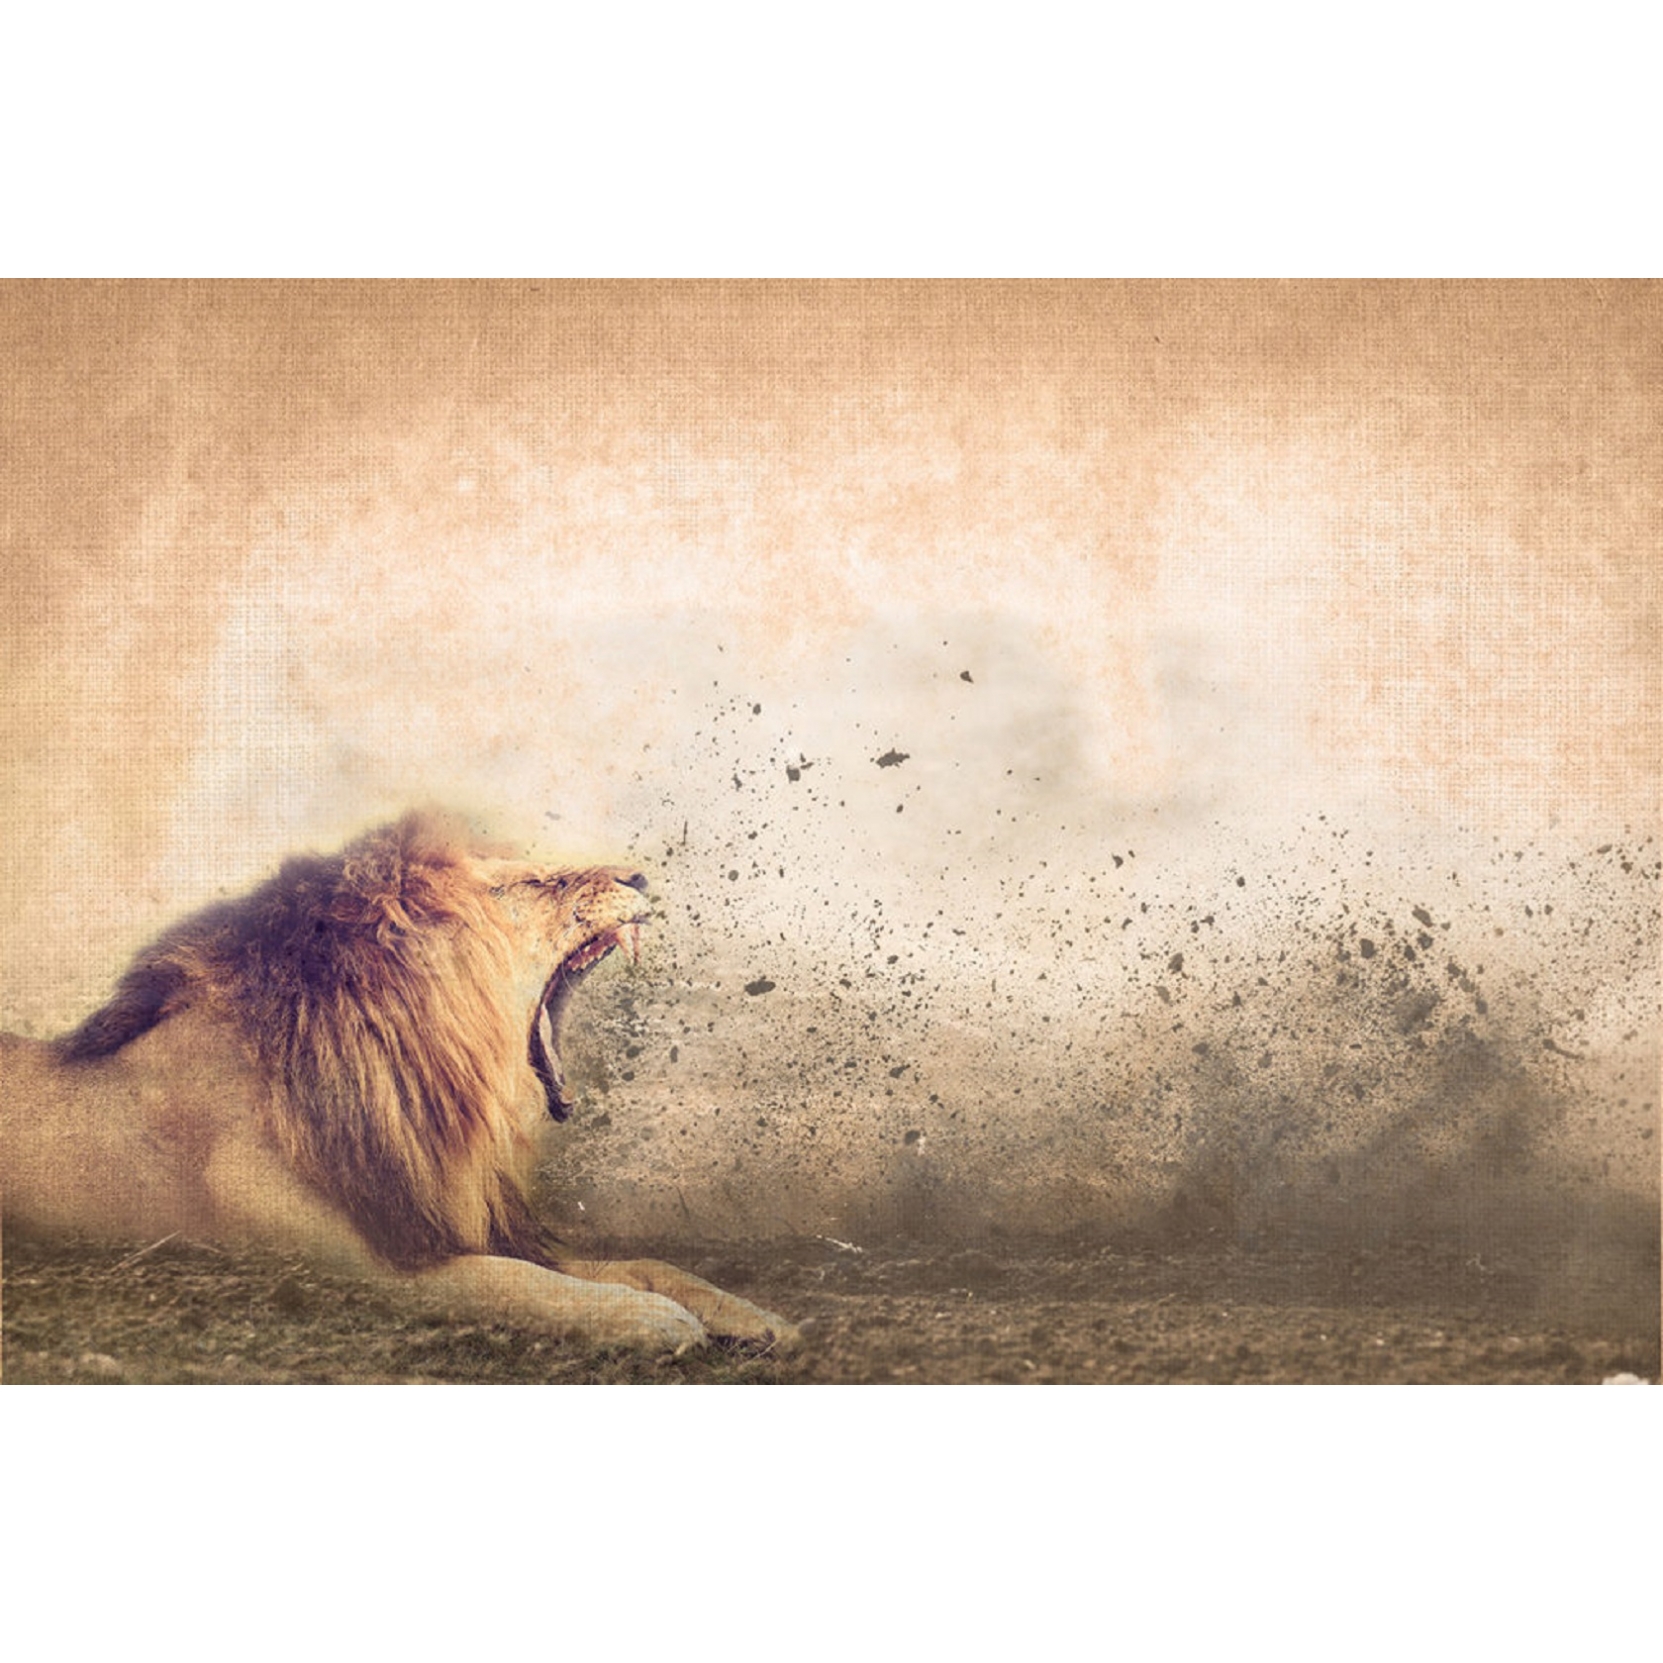 Instabilelab Wallpaper Roar Of The Lion - Masai Lion - HD Wallpaper 